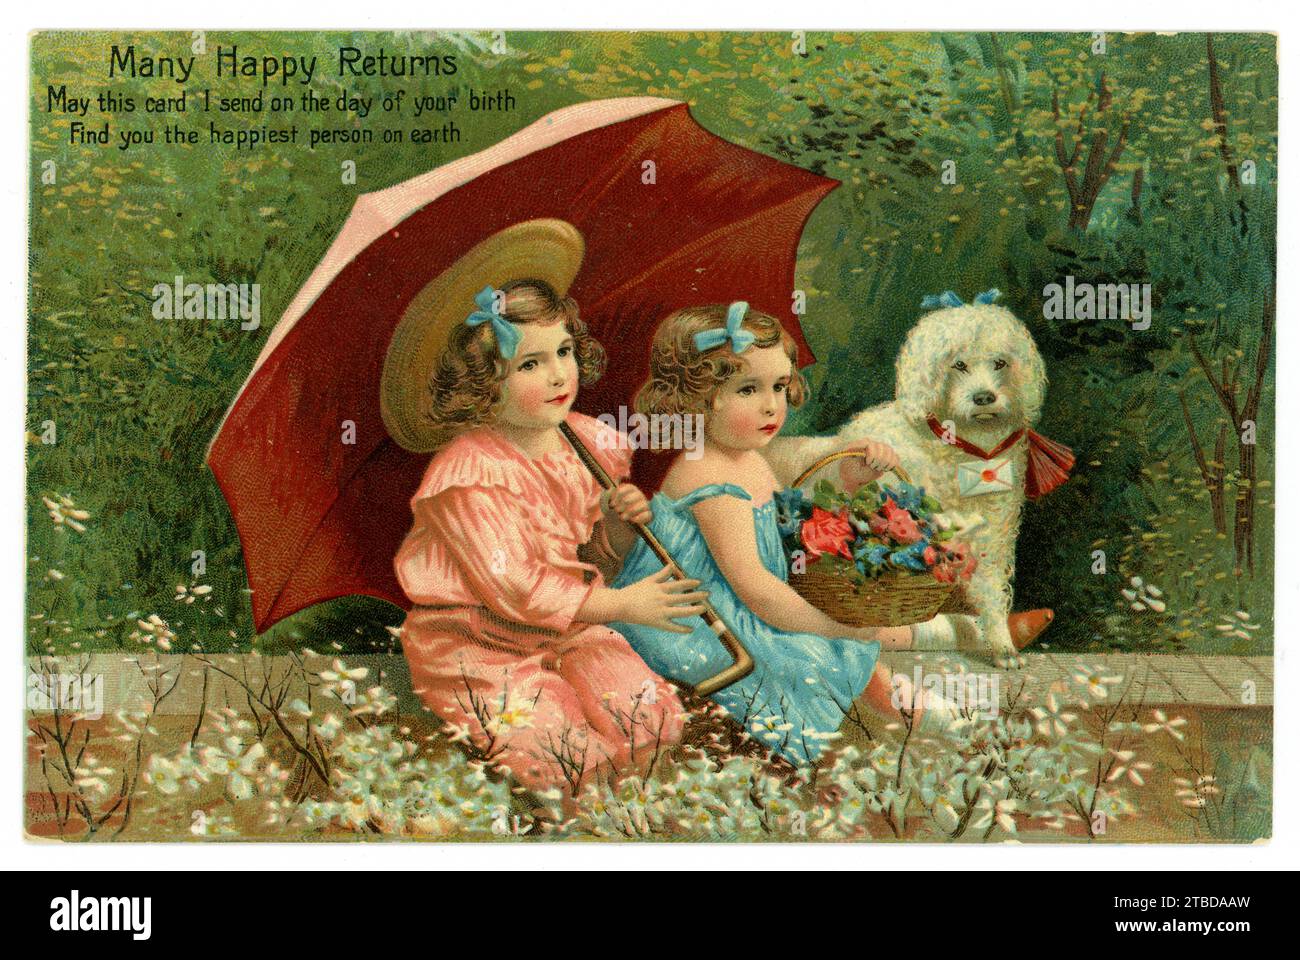 Originelle, charmante, edwardianische Geburtstagsgrüße Postkarte von 2 Kindern unter einem Sonnenschirm mit Pudel, sitzend an einer Wand der Pudel hat einen Buchstaben am Kragen, das Mädchen in Blau hält einen hübschen Korb mit Blumen. Postkarte vom 21. Juni 1908, Großbritannien Stockfoto